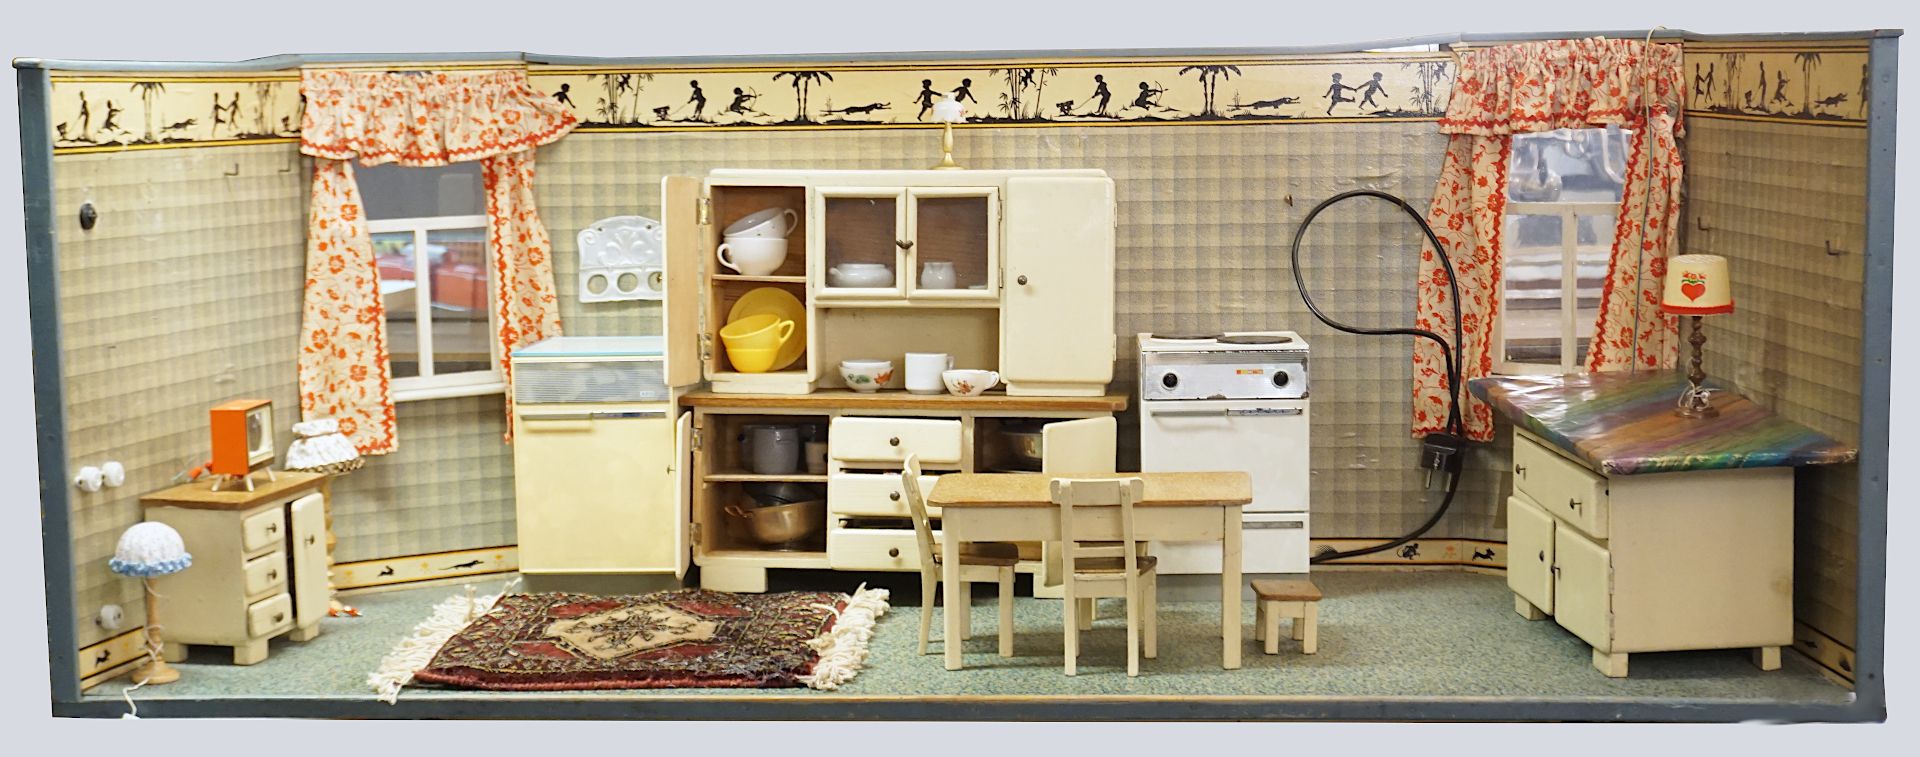 1 Puppenstubenküche mit Einrichtung im Stile der 1940er/50er Jahre: